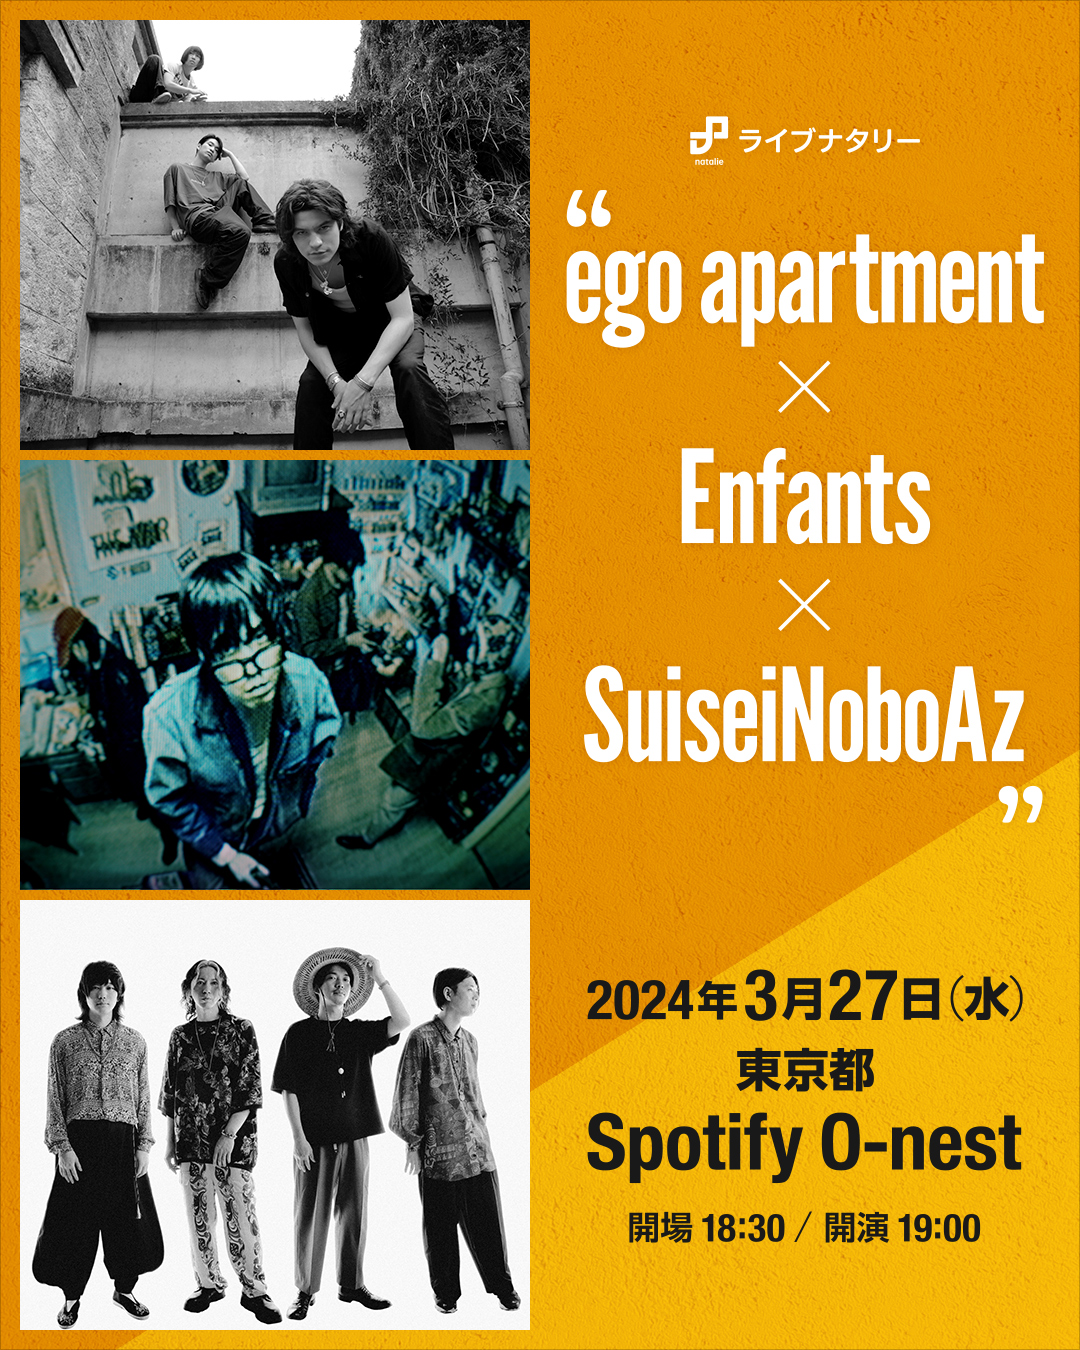 ライブナタリー “ego apartment × Enfants × SuiseiNoboAz”